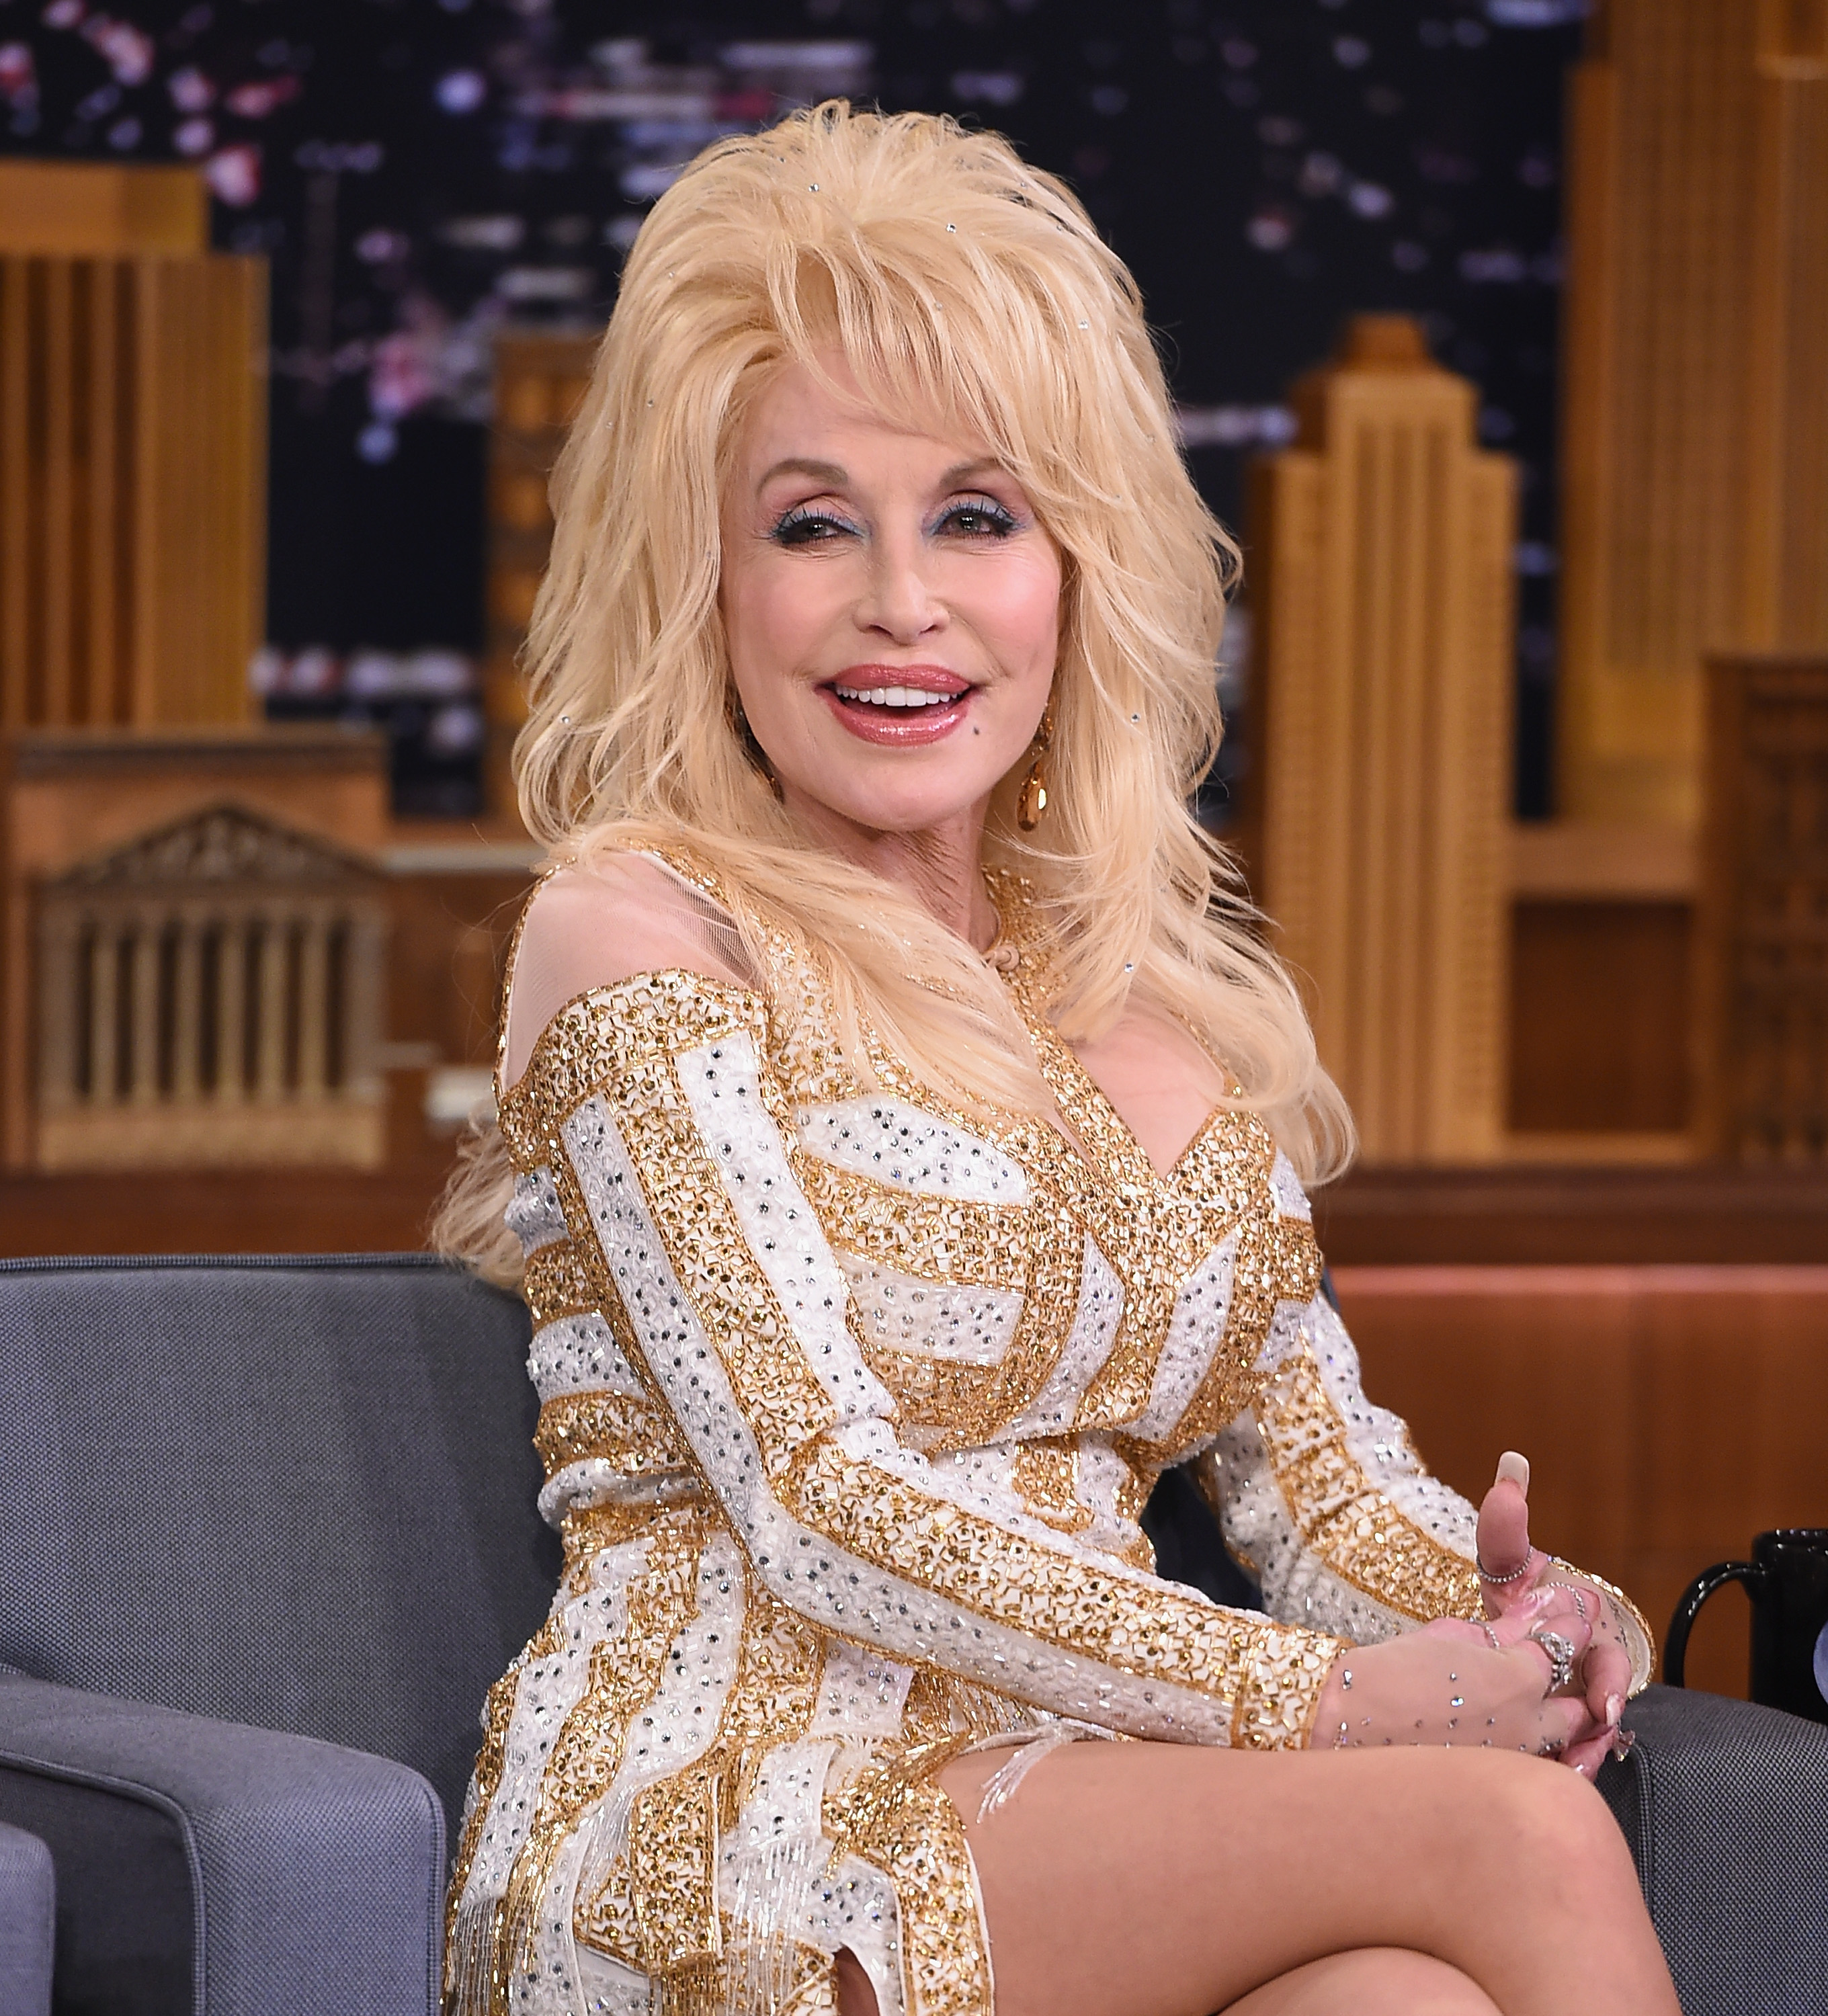 Dolly Parton besucht die Besetzung von "9 To 5" The Musical in London, England am 17. Februar 2019 | Quelle: Getty Images